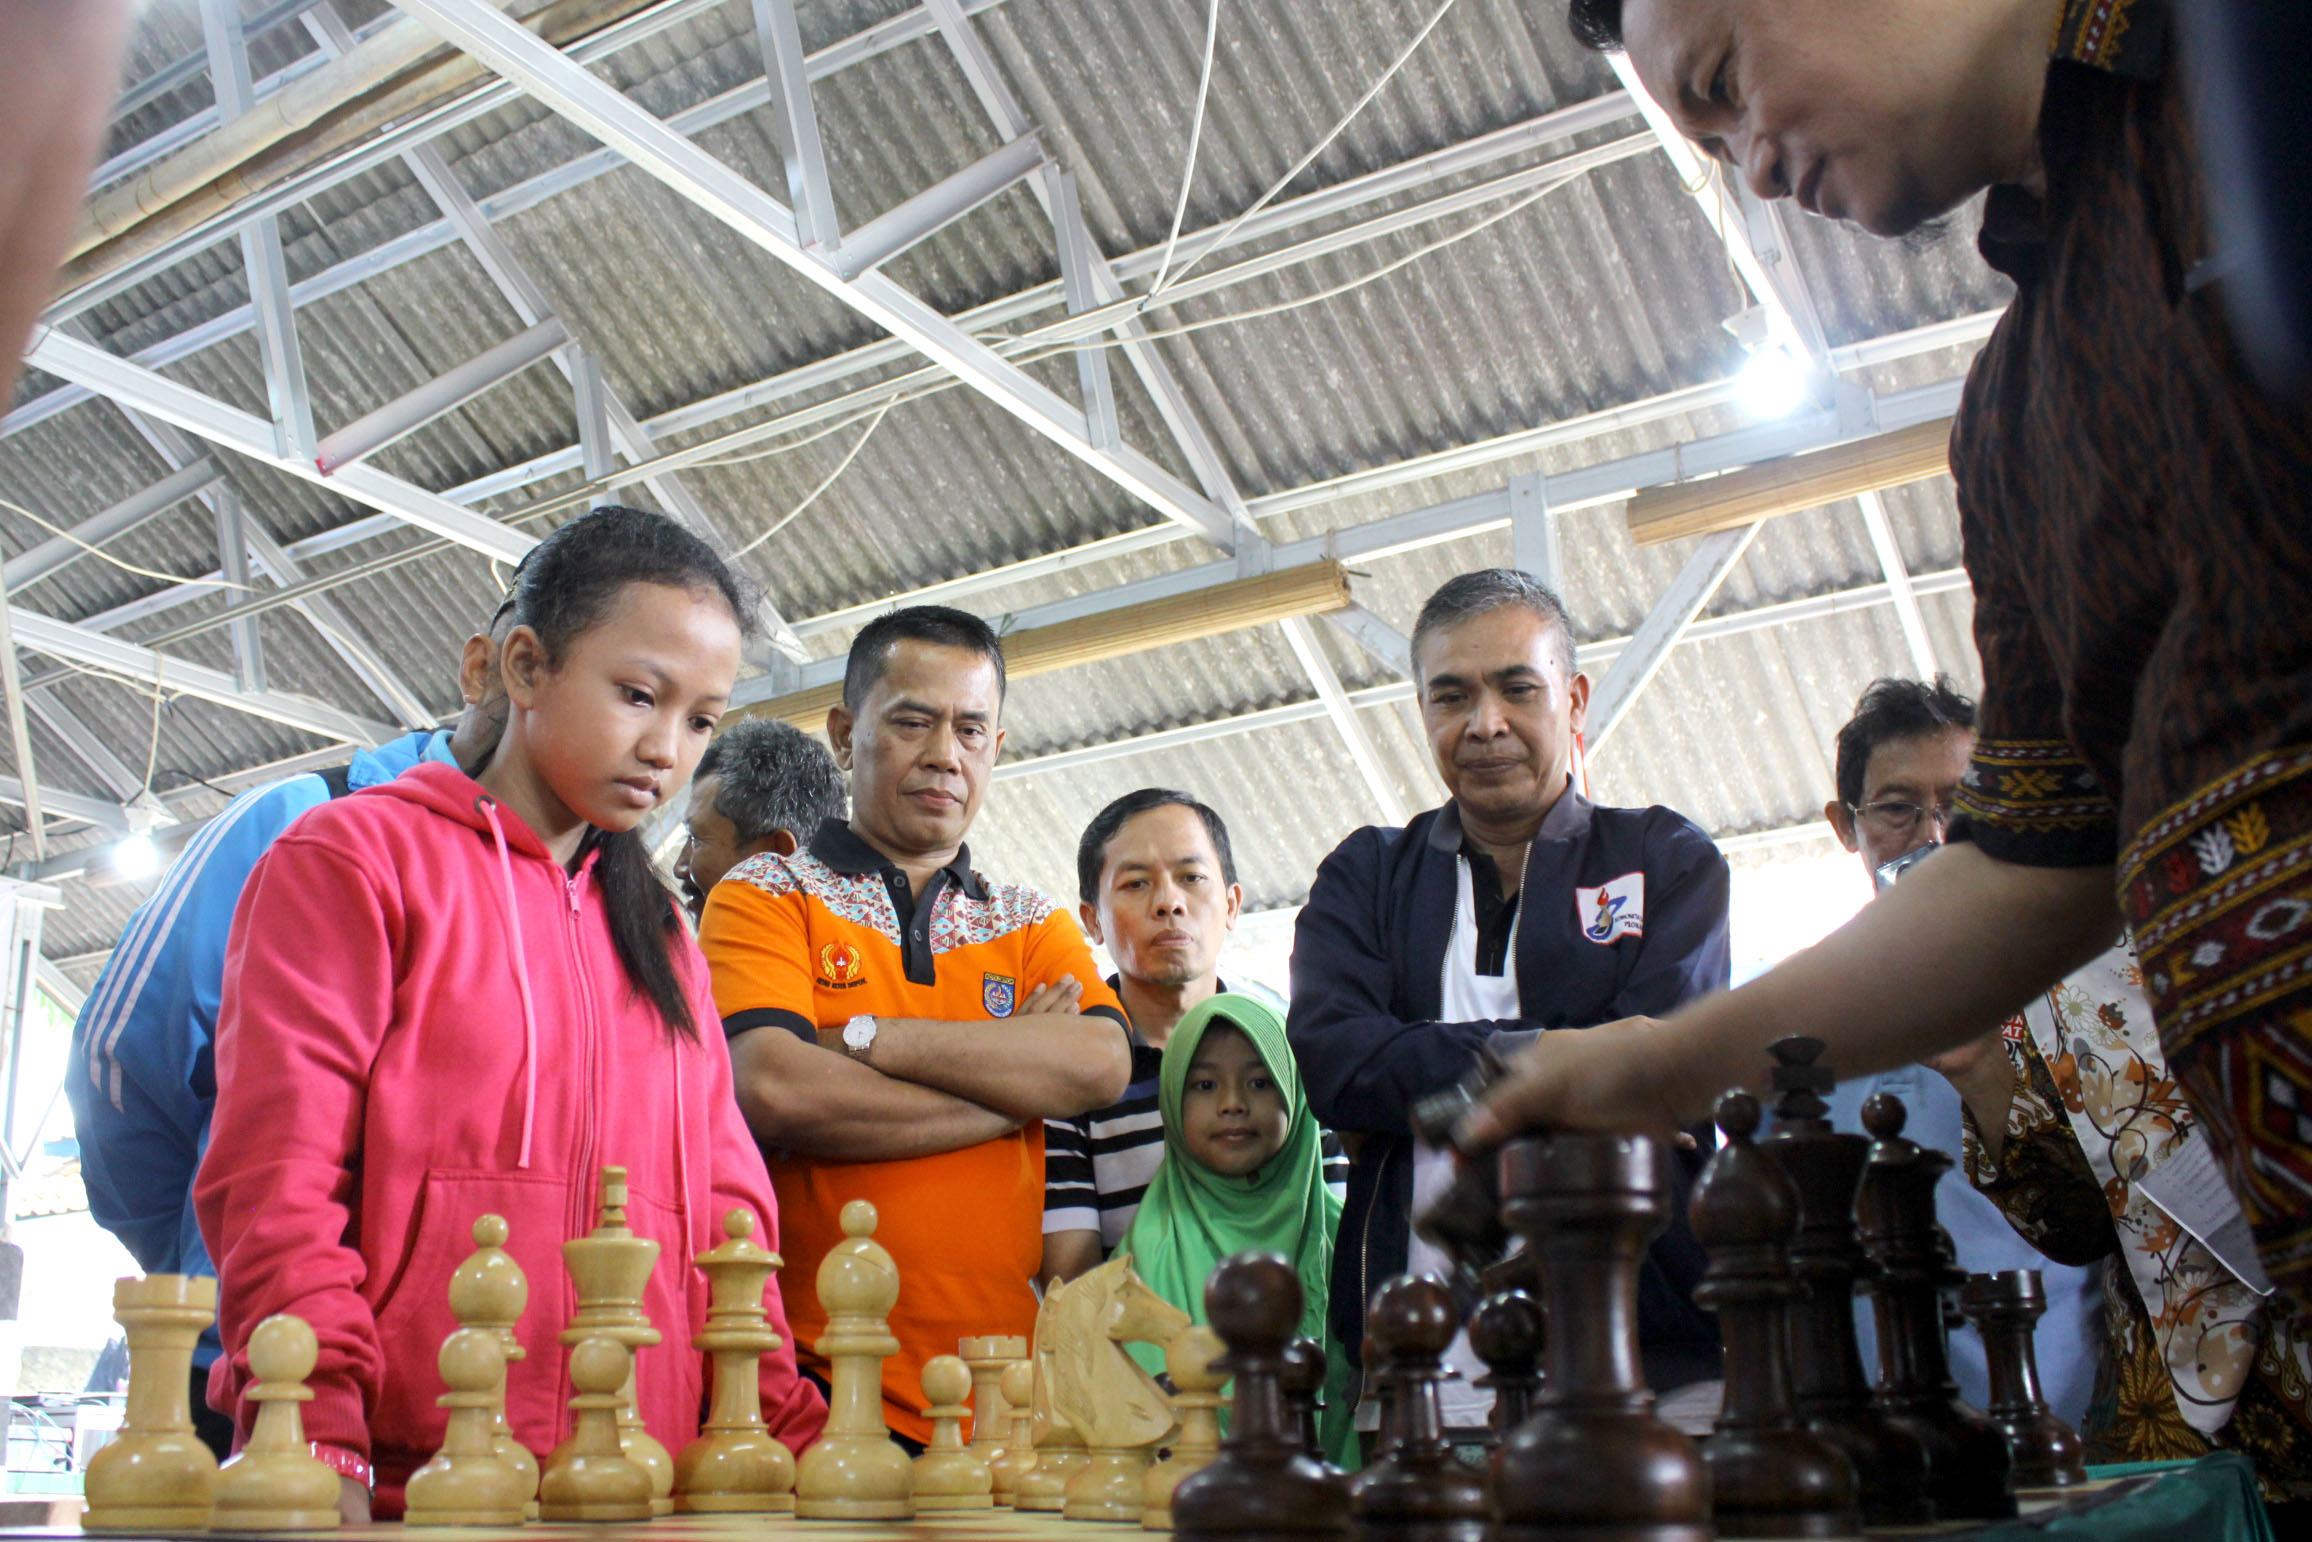 Hery Suprianto Wakil ketua 1 Koni Kota Depok Serius memperhatikan permainan catur cepat di acara  open turnamen catur Pion 8, Cilodong Kota Depok Jawa barat, (02/03/19).